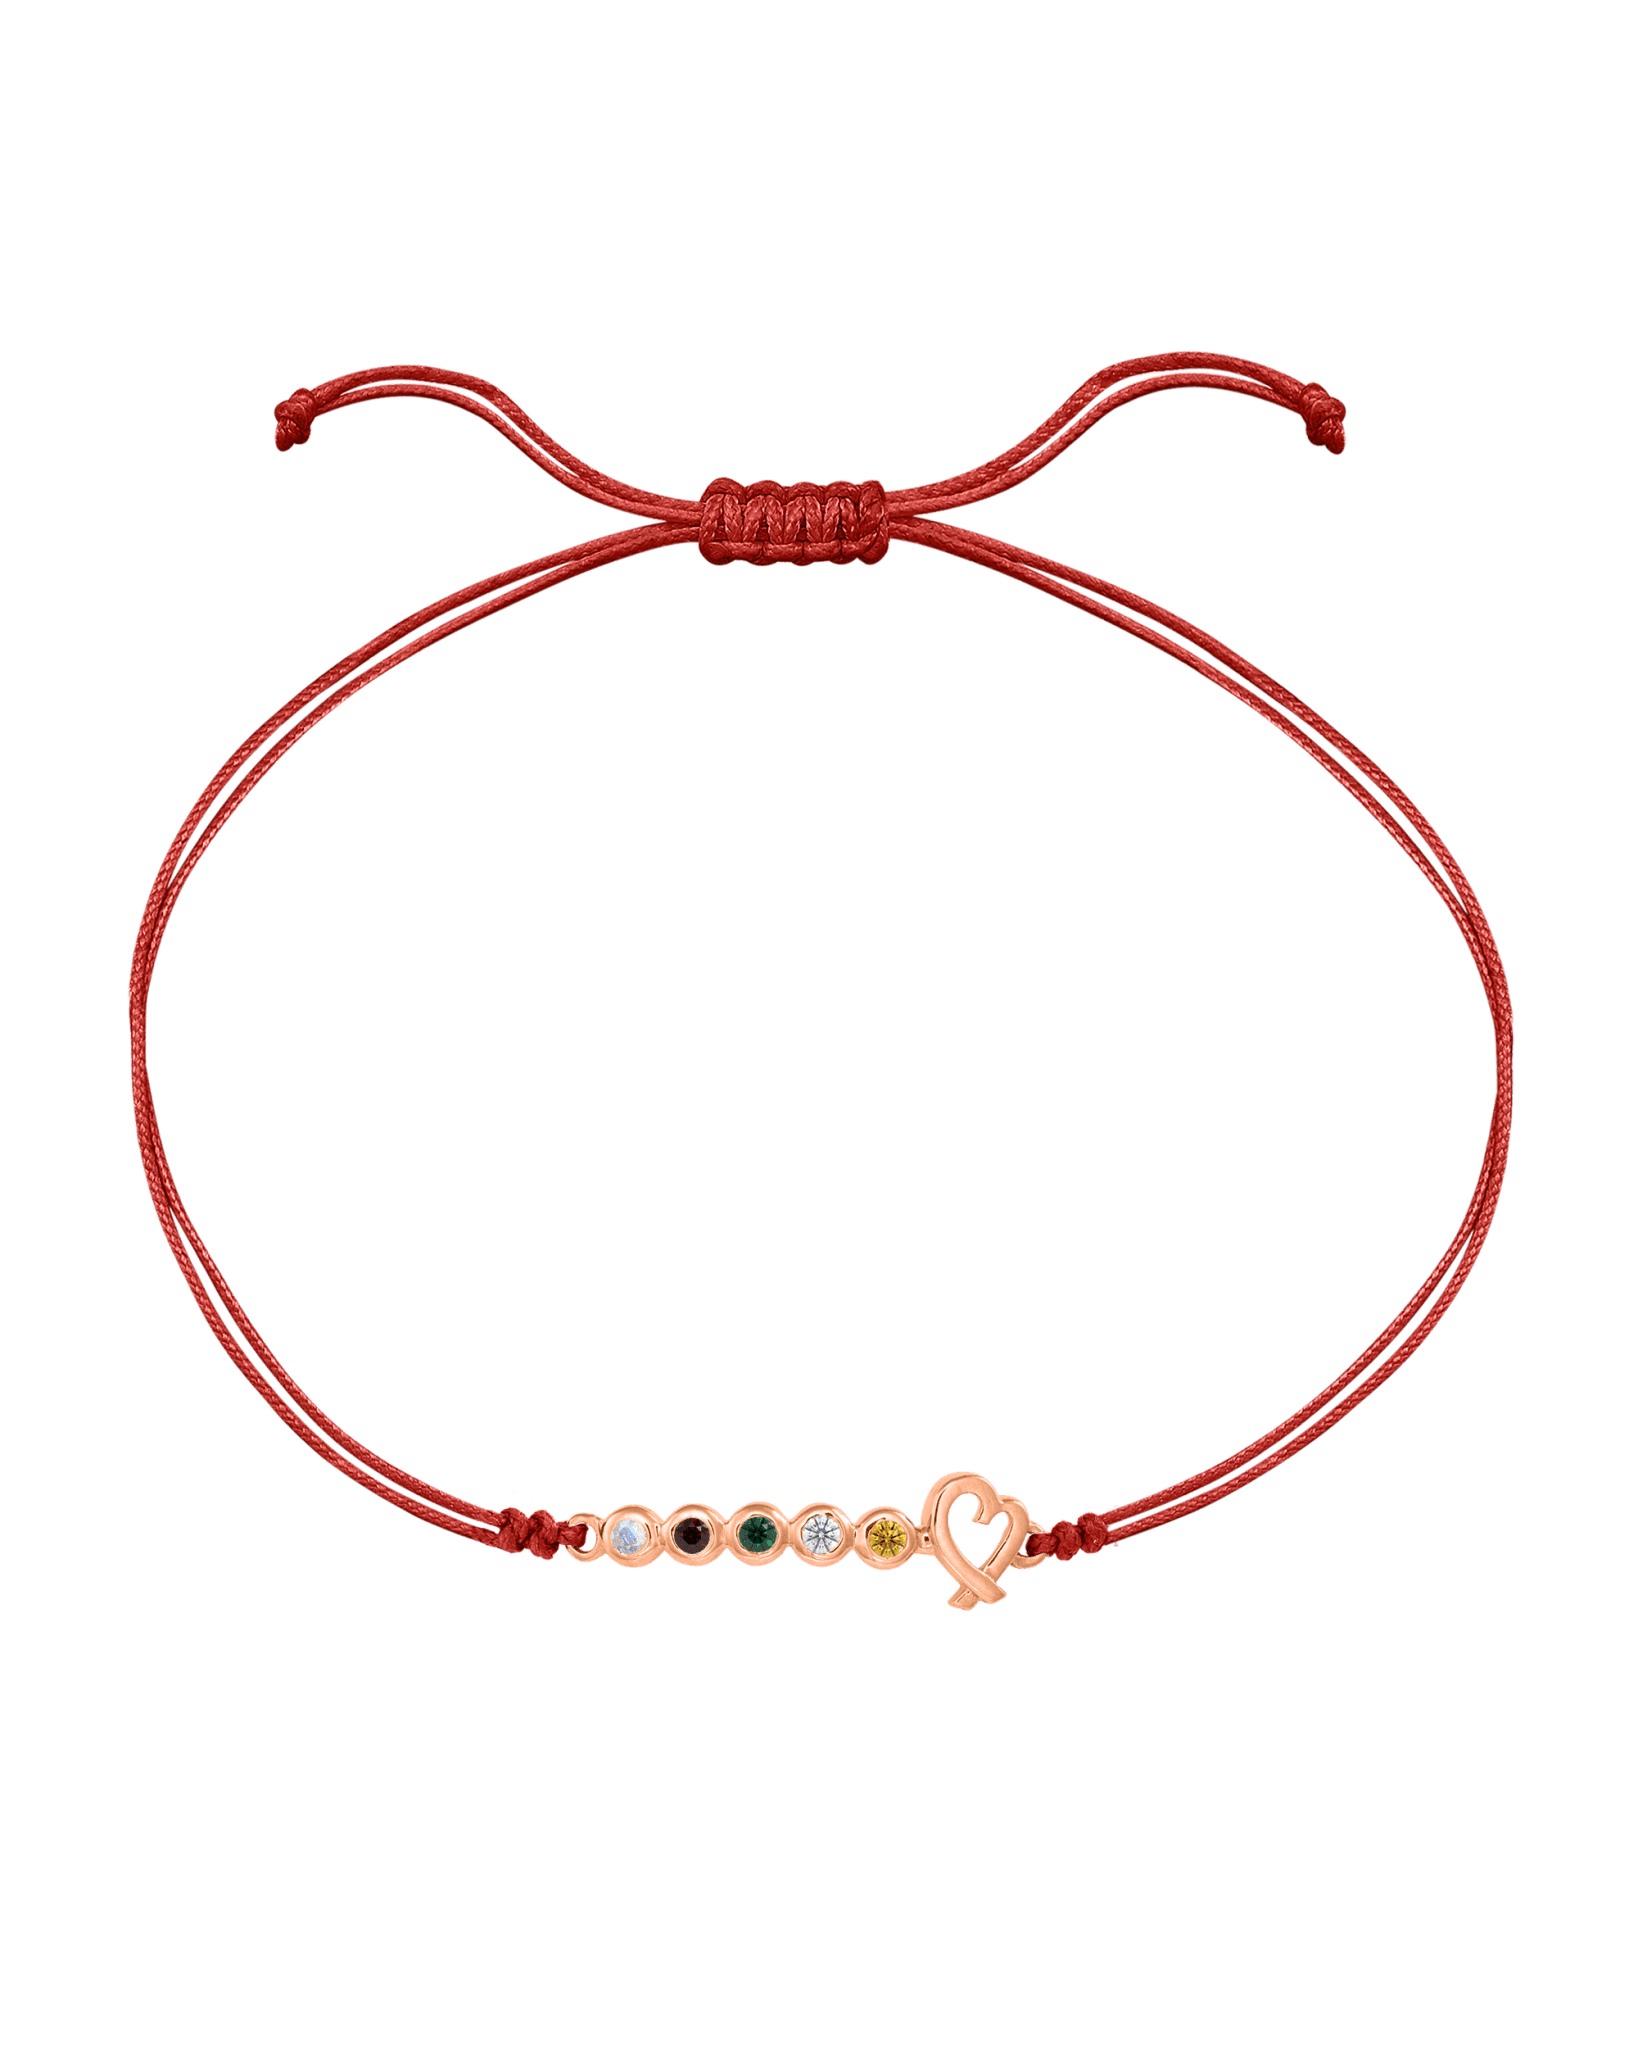 Birthstone Bar Heart Bracelet - 14K Rose Gold Bracelets 14K Solid Gold Red 2 